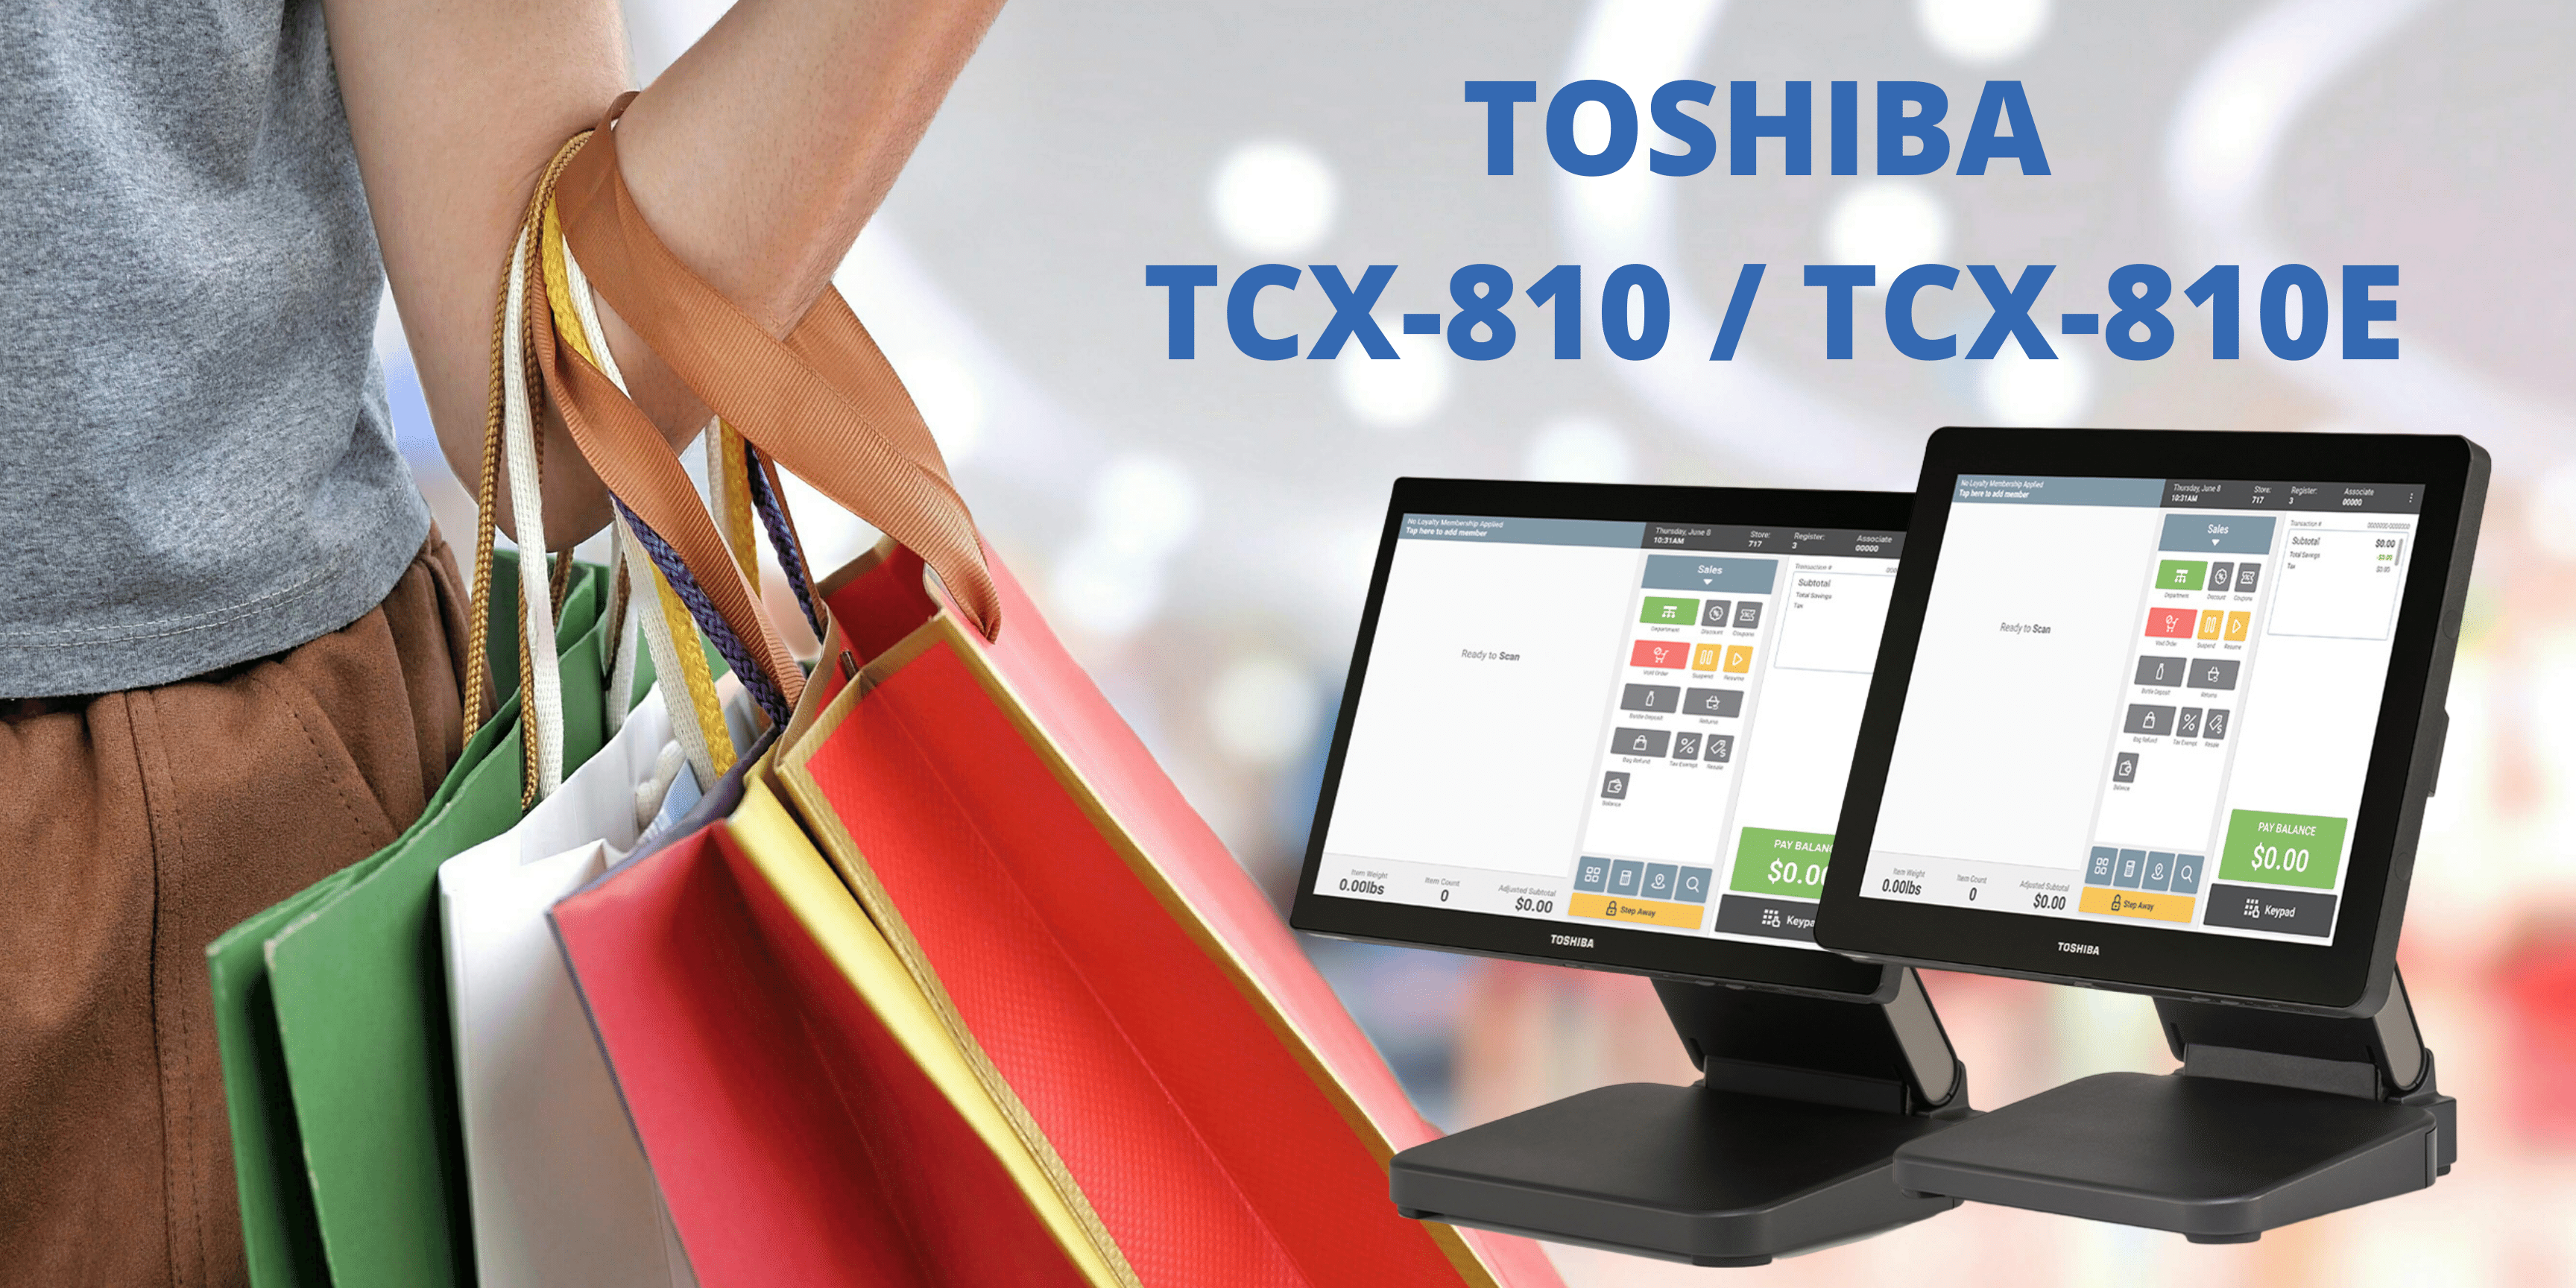 Toshiba TCX-810